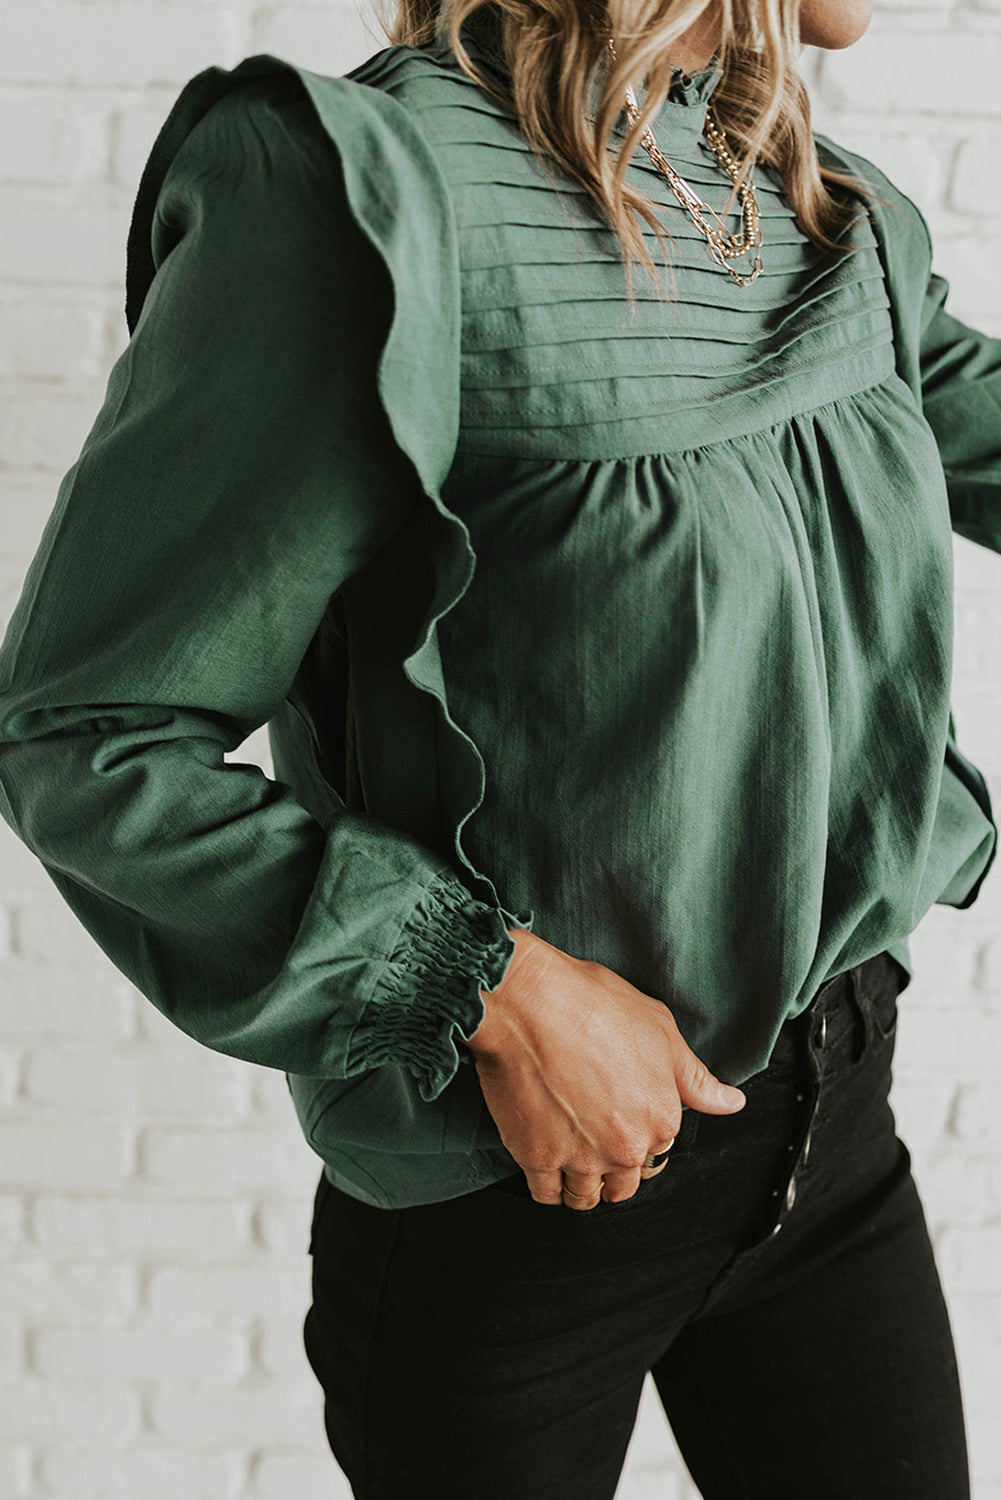 Kamelja enobarvna bluza z napihnjenimi rokavi s stojalom in naborki